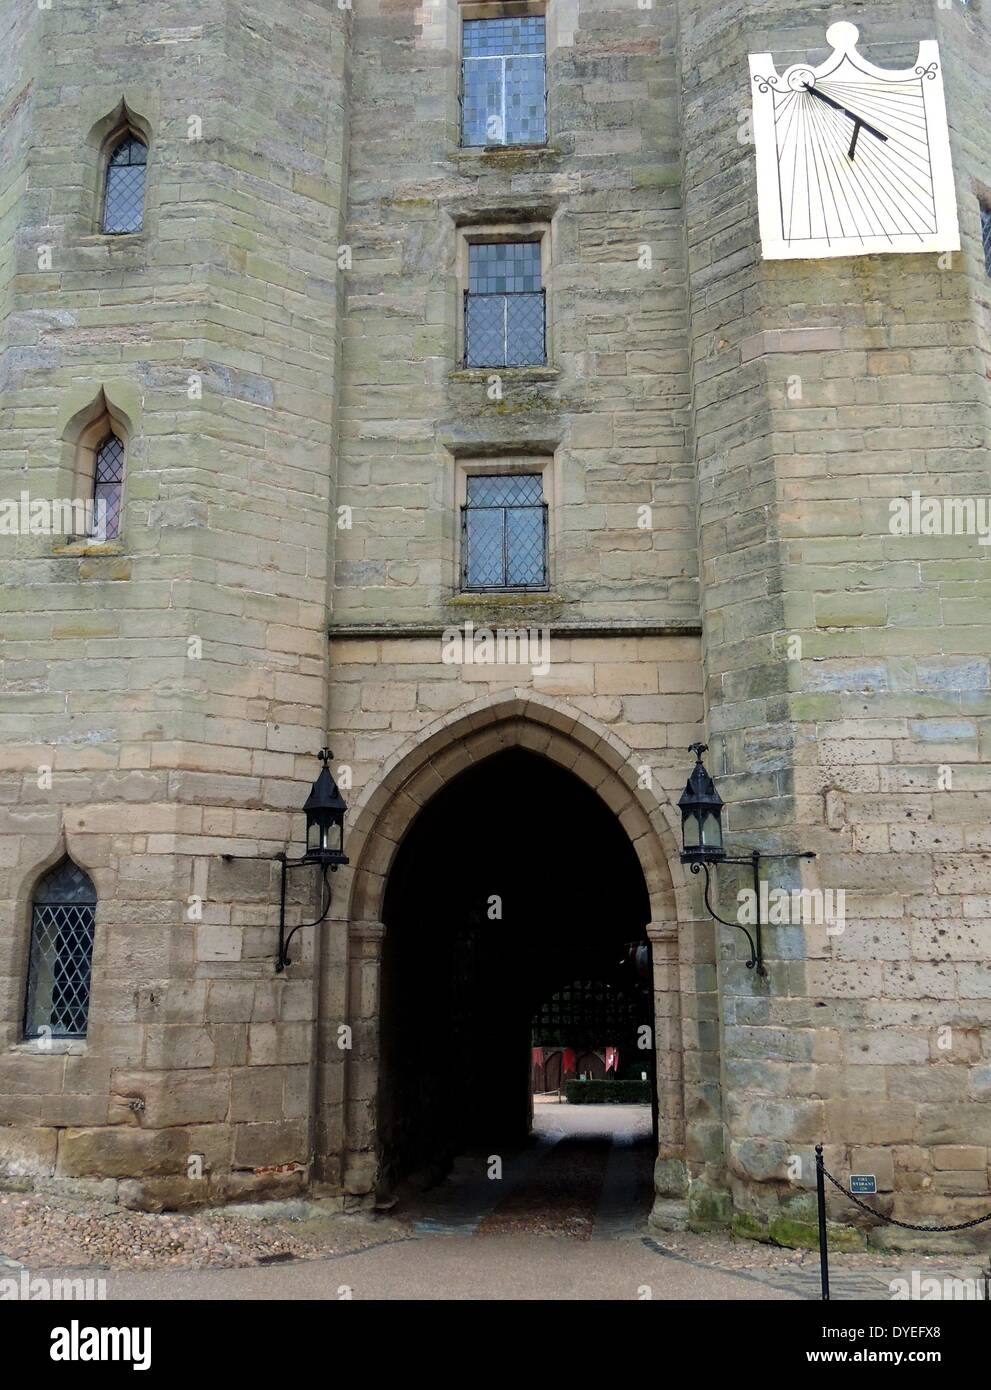 Vue sur le château de Warwick en 2013. Le château médiéval a été élaboré à partir d'un original construit par William le Conquérant en 1068 Banque D'Images